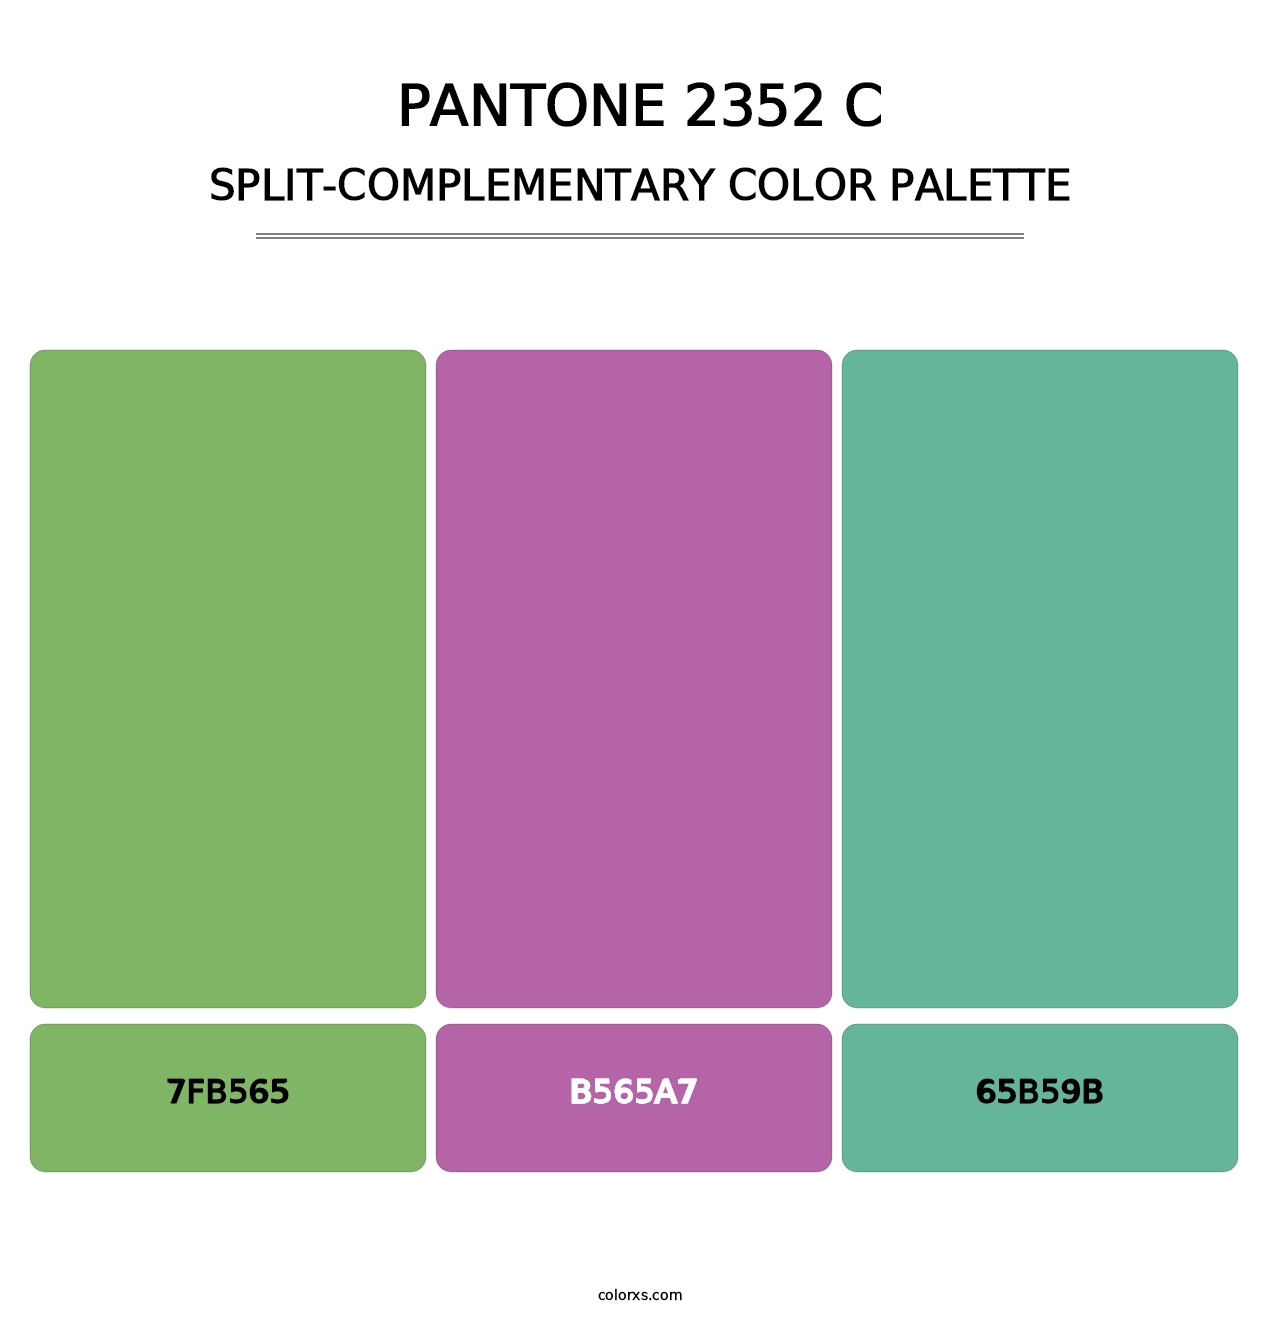 PANTONE 2352 C - Split-Complementary Color Palette